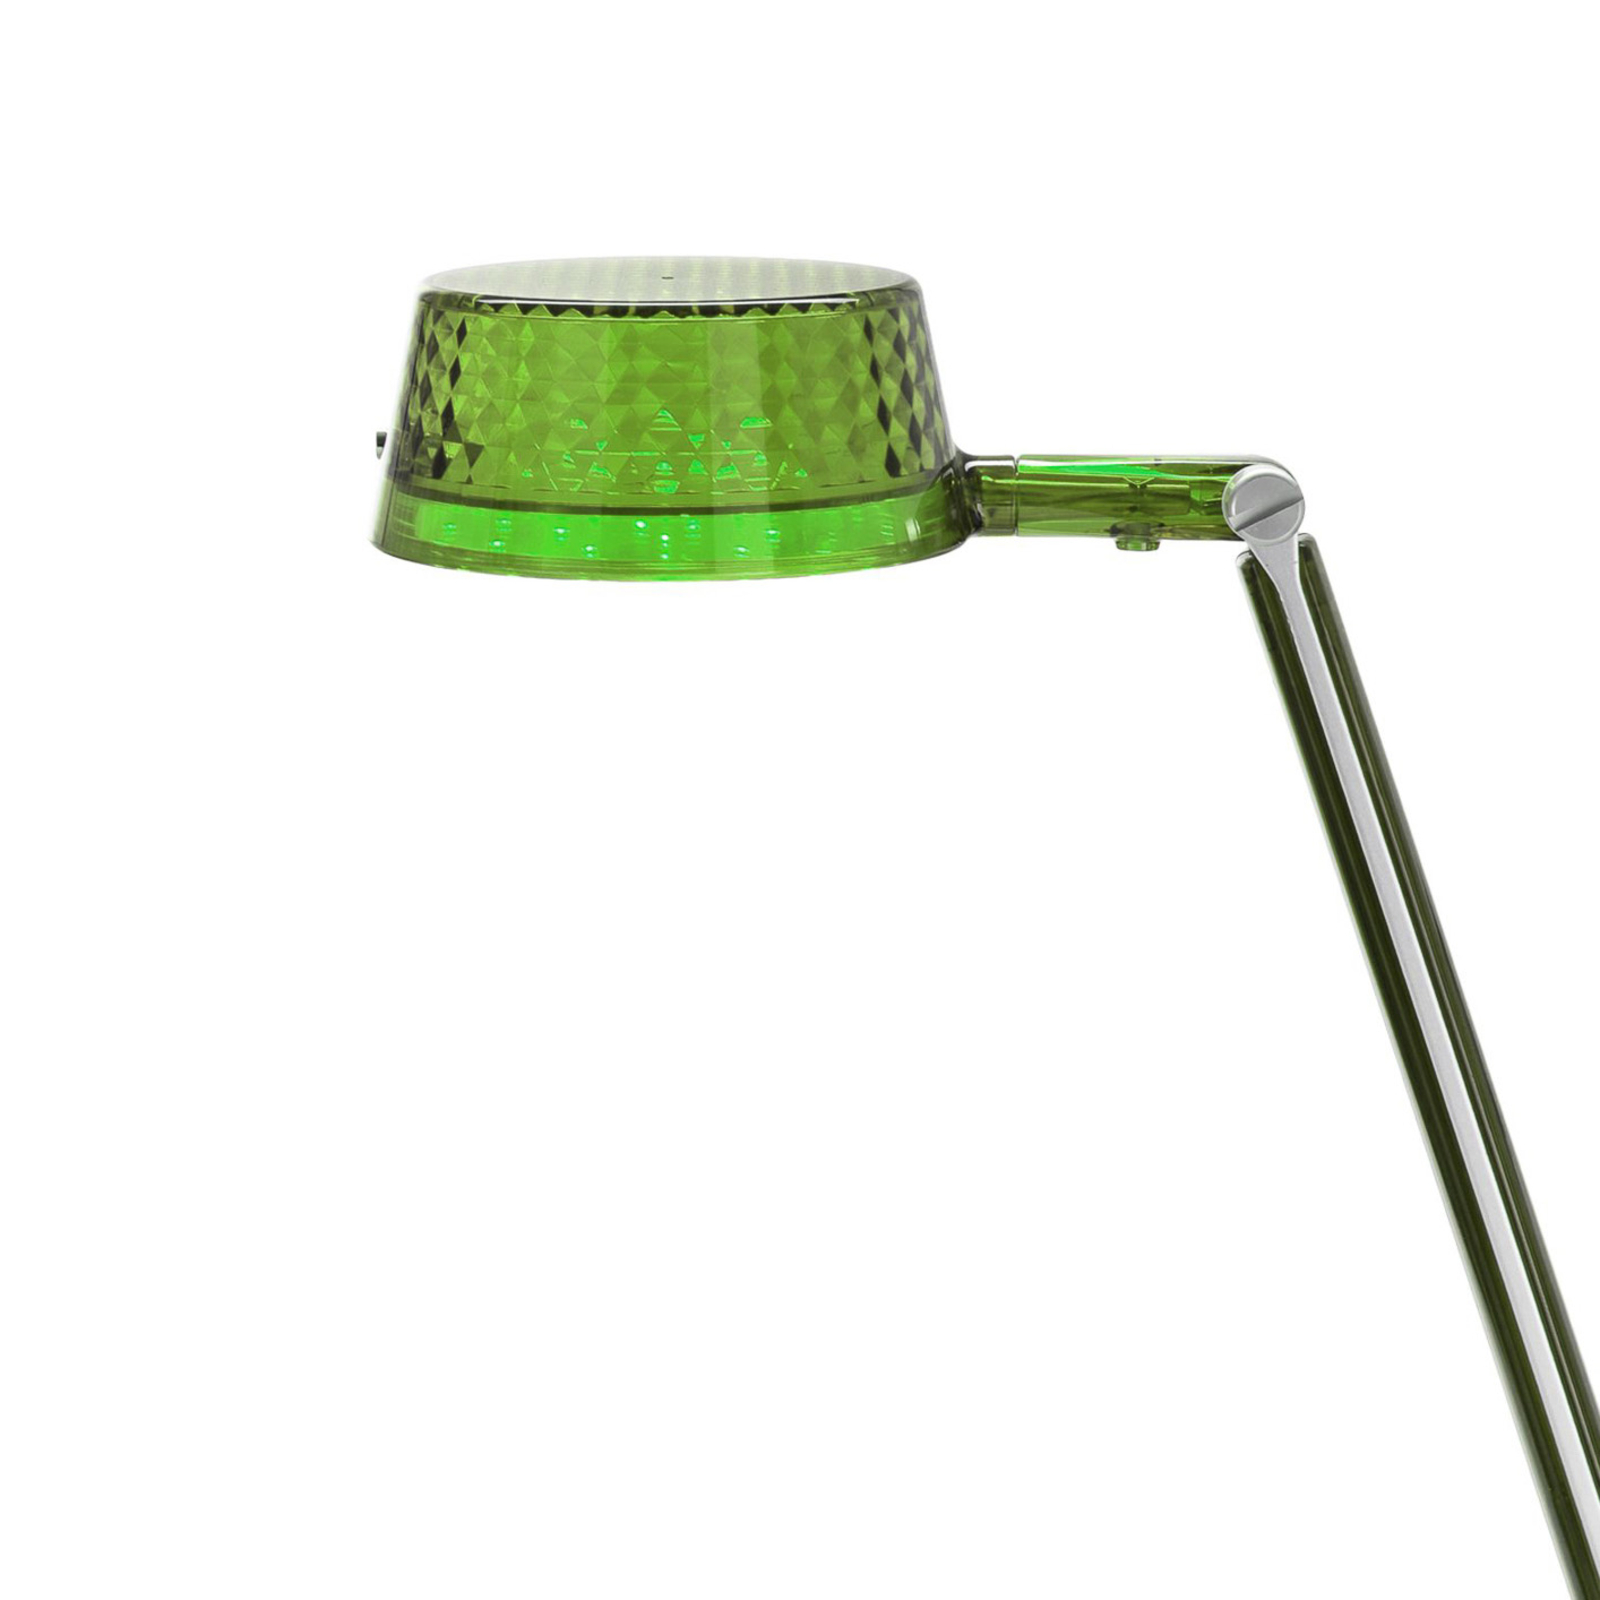 Kartell Aledin Dec - LED-Tischlampe, grün